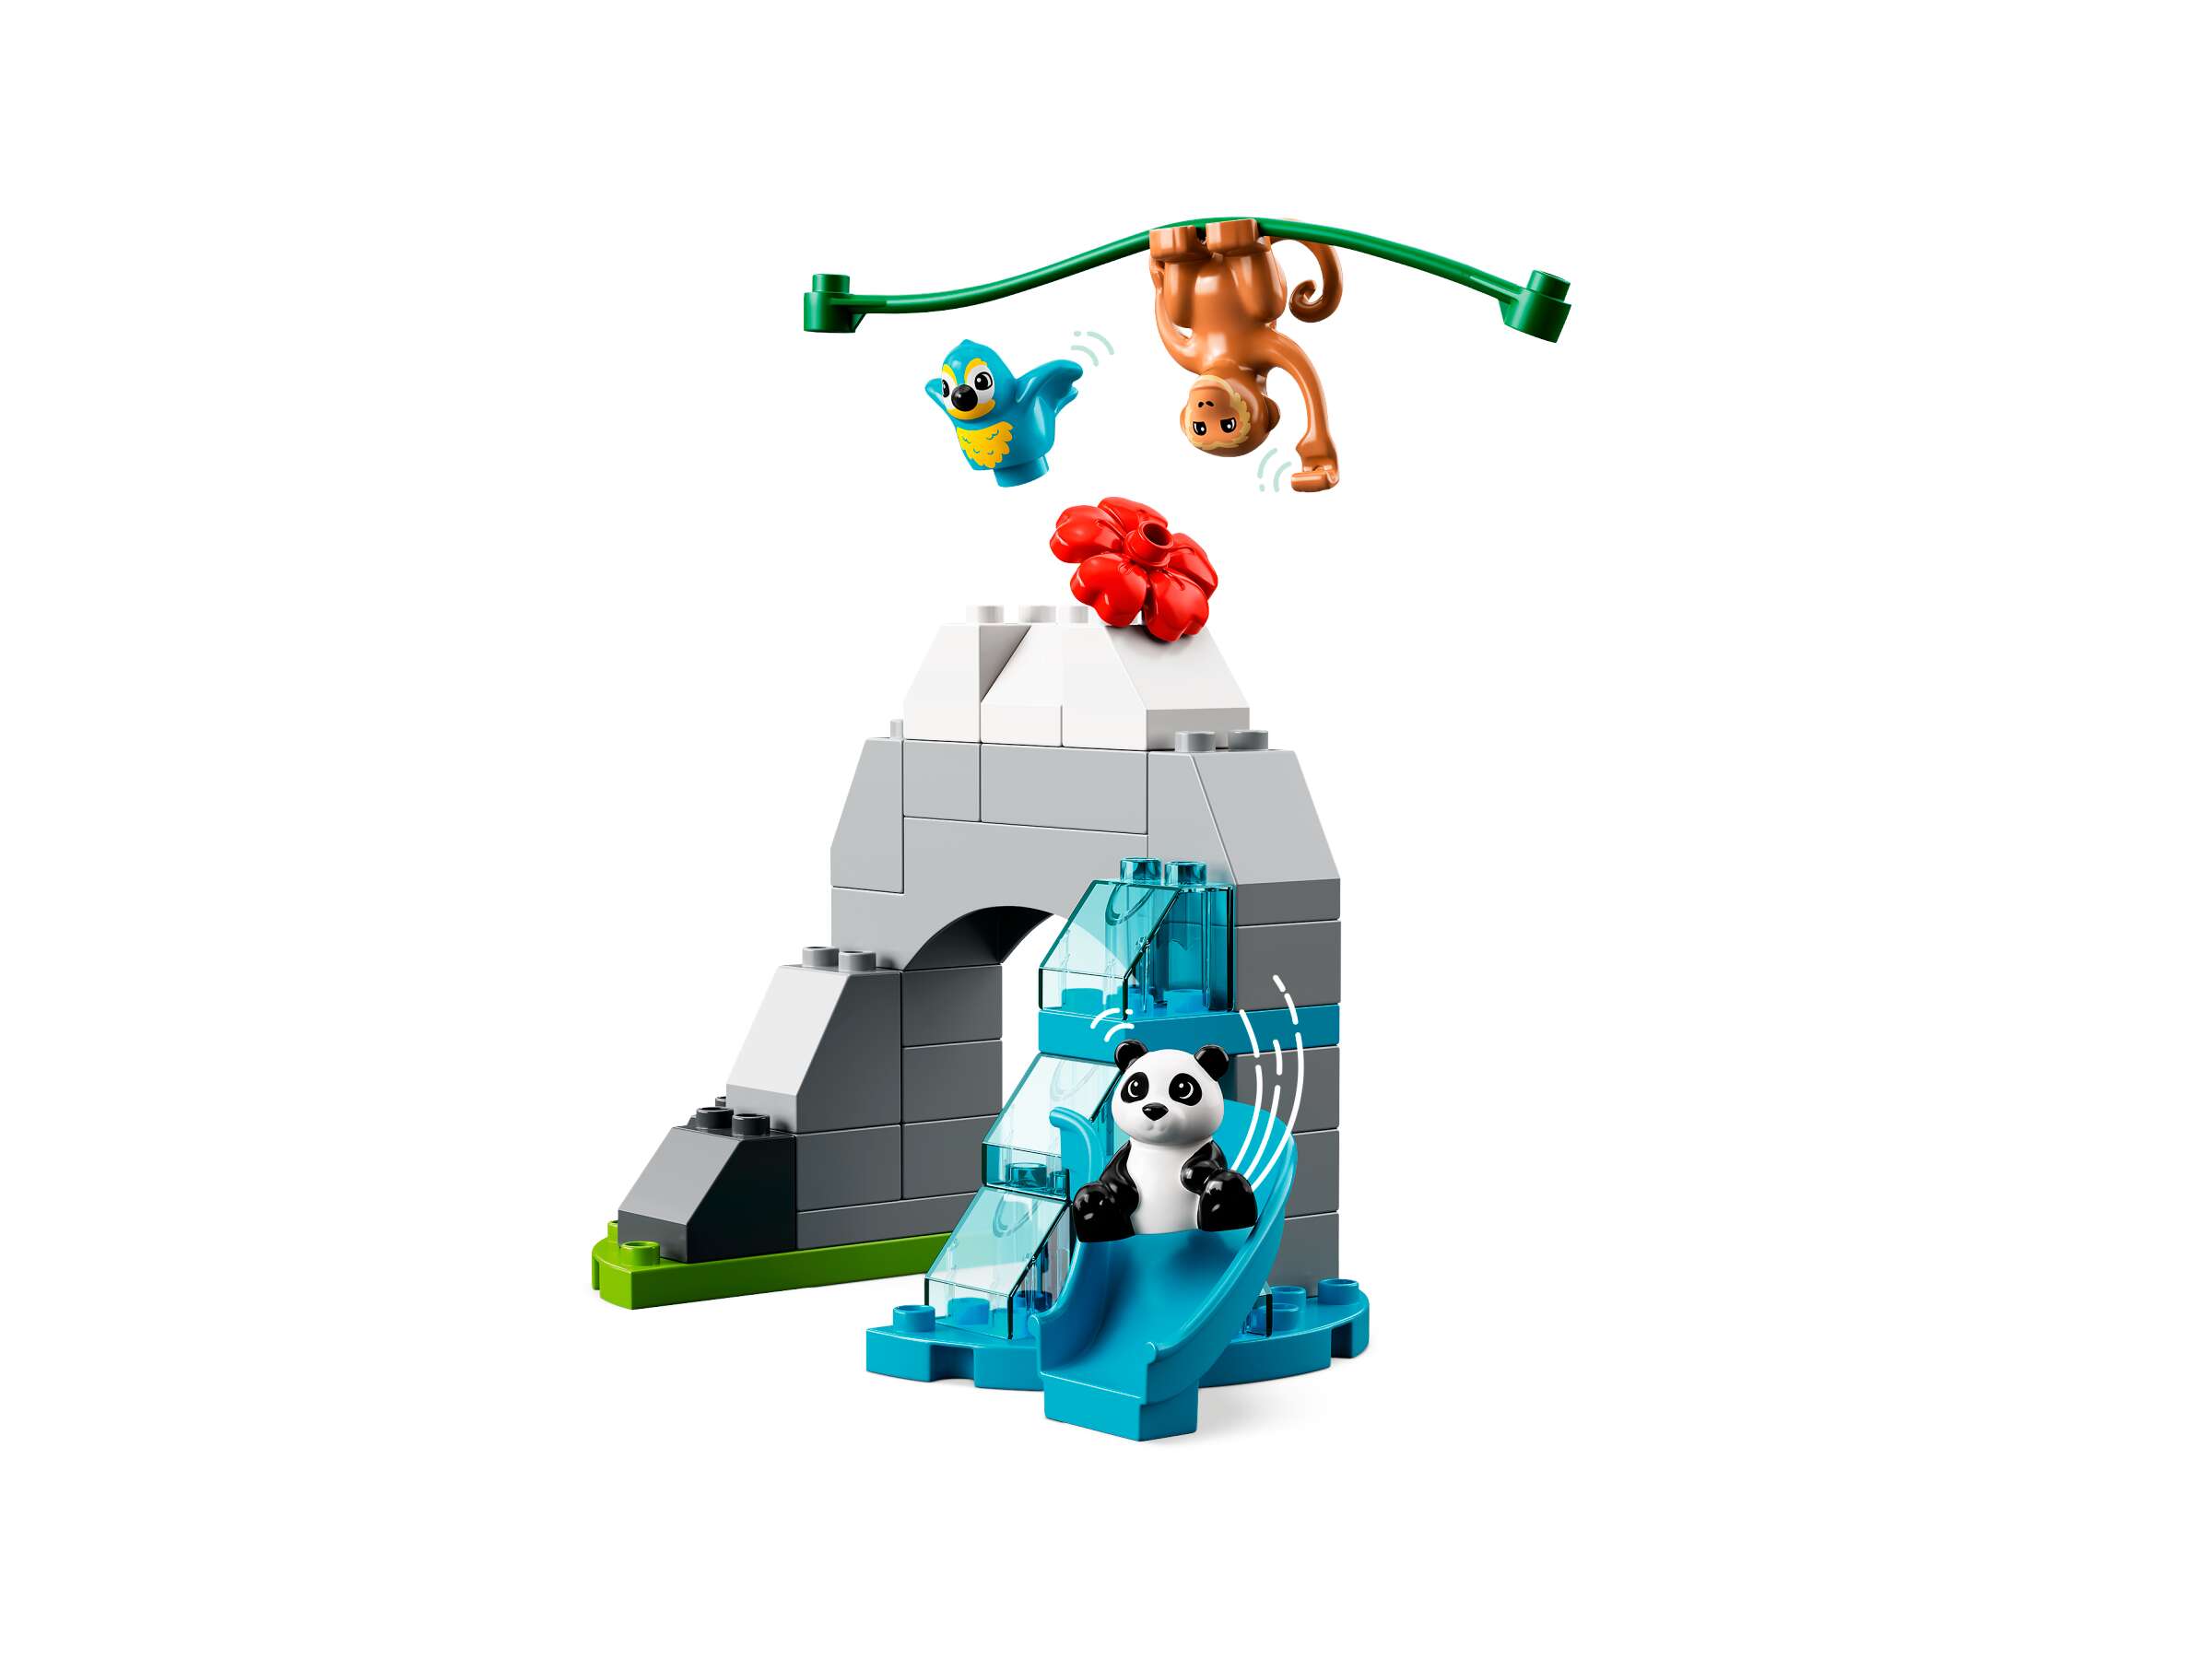 LEGO 10974 DUPLO Wilde Tiere Asiens Spielzeug-Set mit Sound